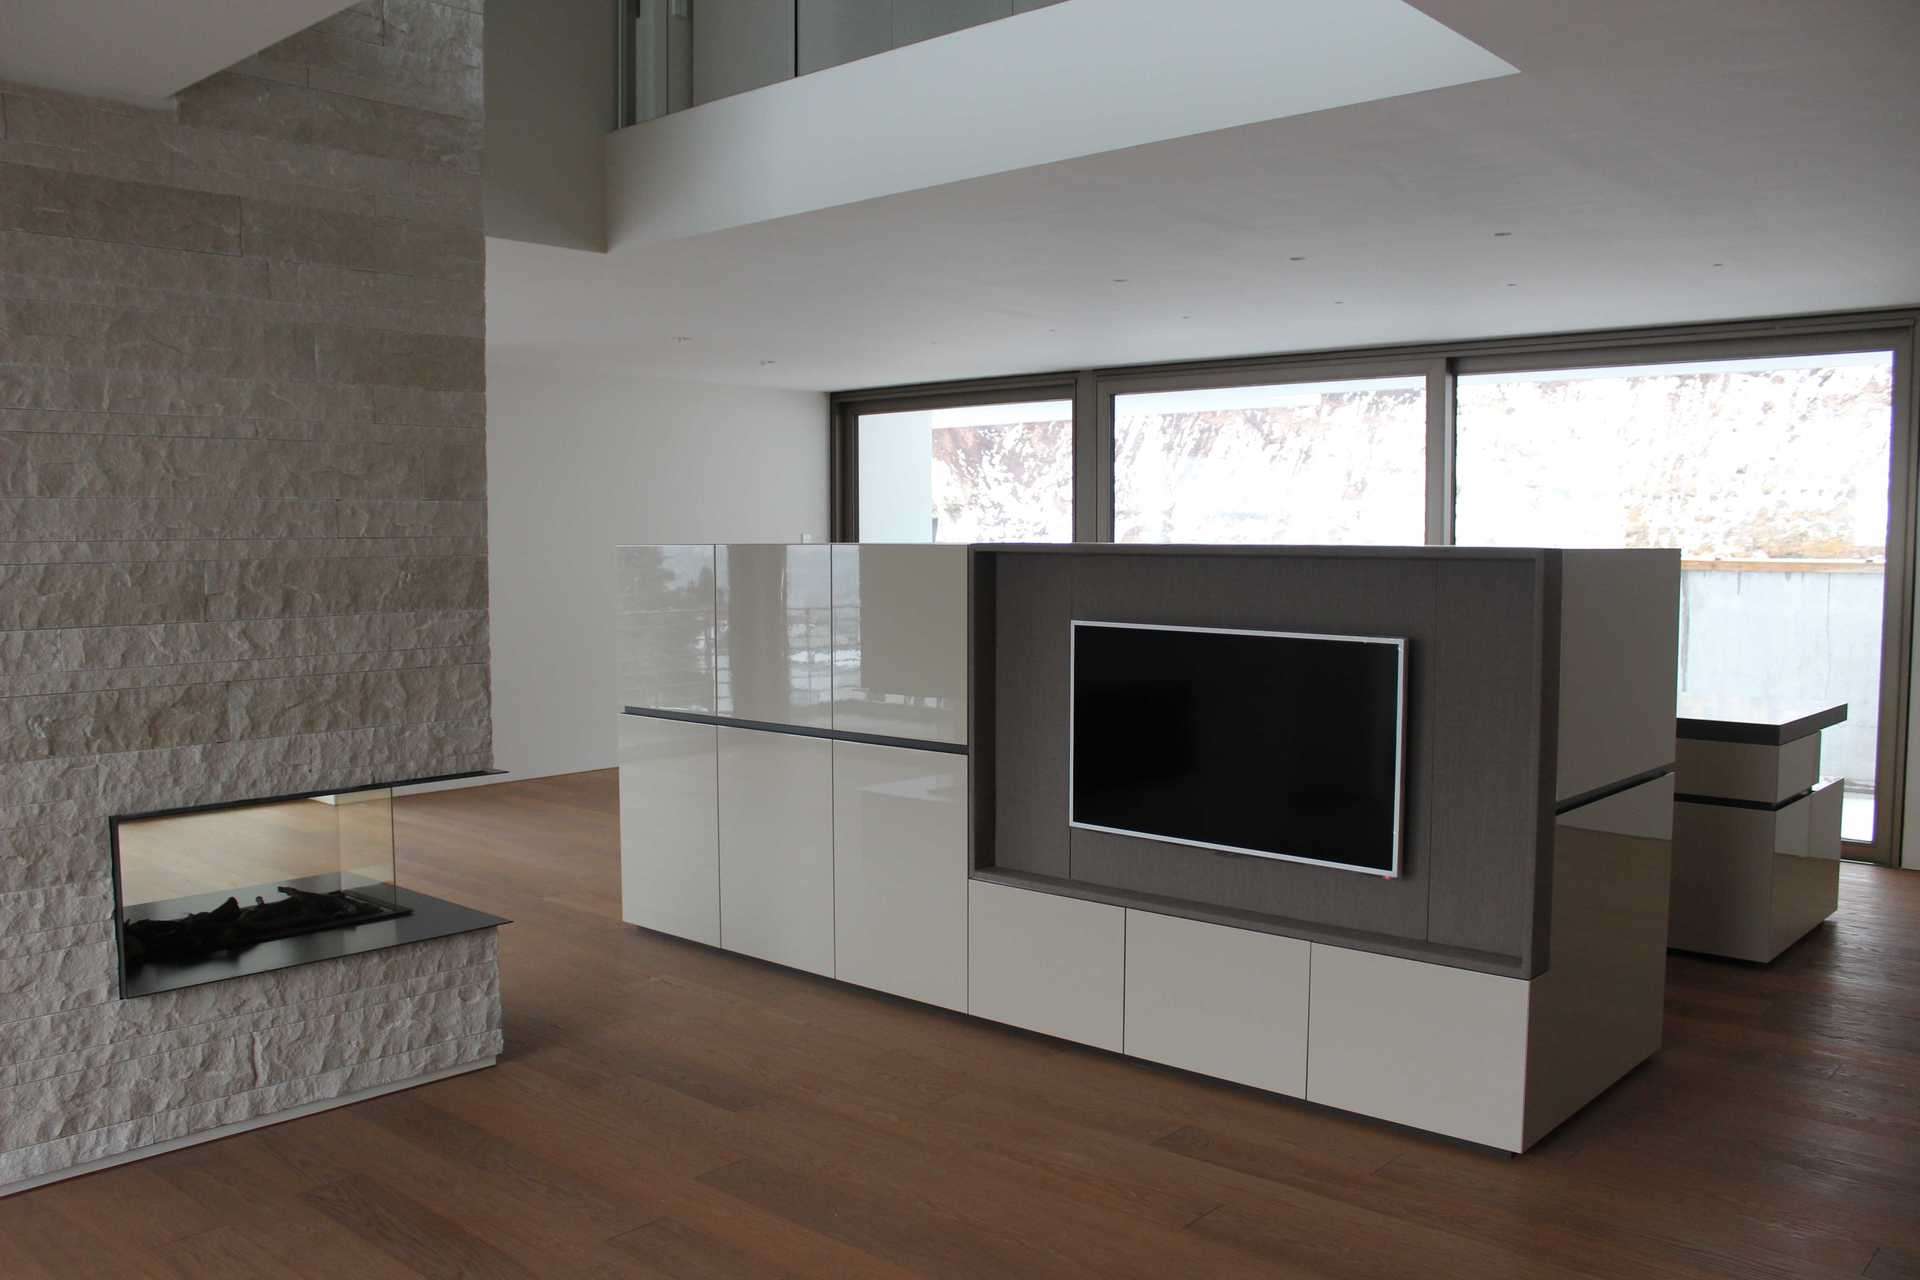 In die Rückwand der Küche ein Wohnzimmermöbel inklusiv Fernseher, freistehend im Raum. Weiß Glanz Lack, Rückwand hinter dem Fernseher in grau.